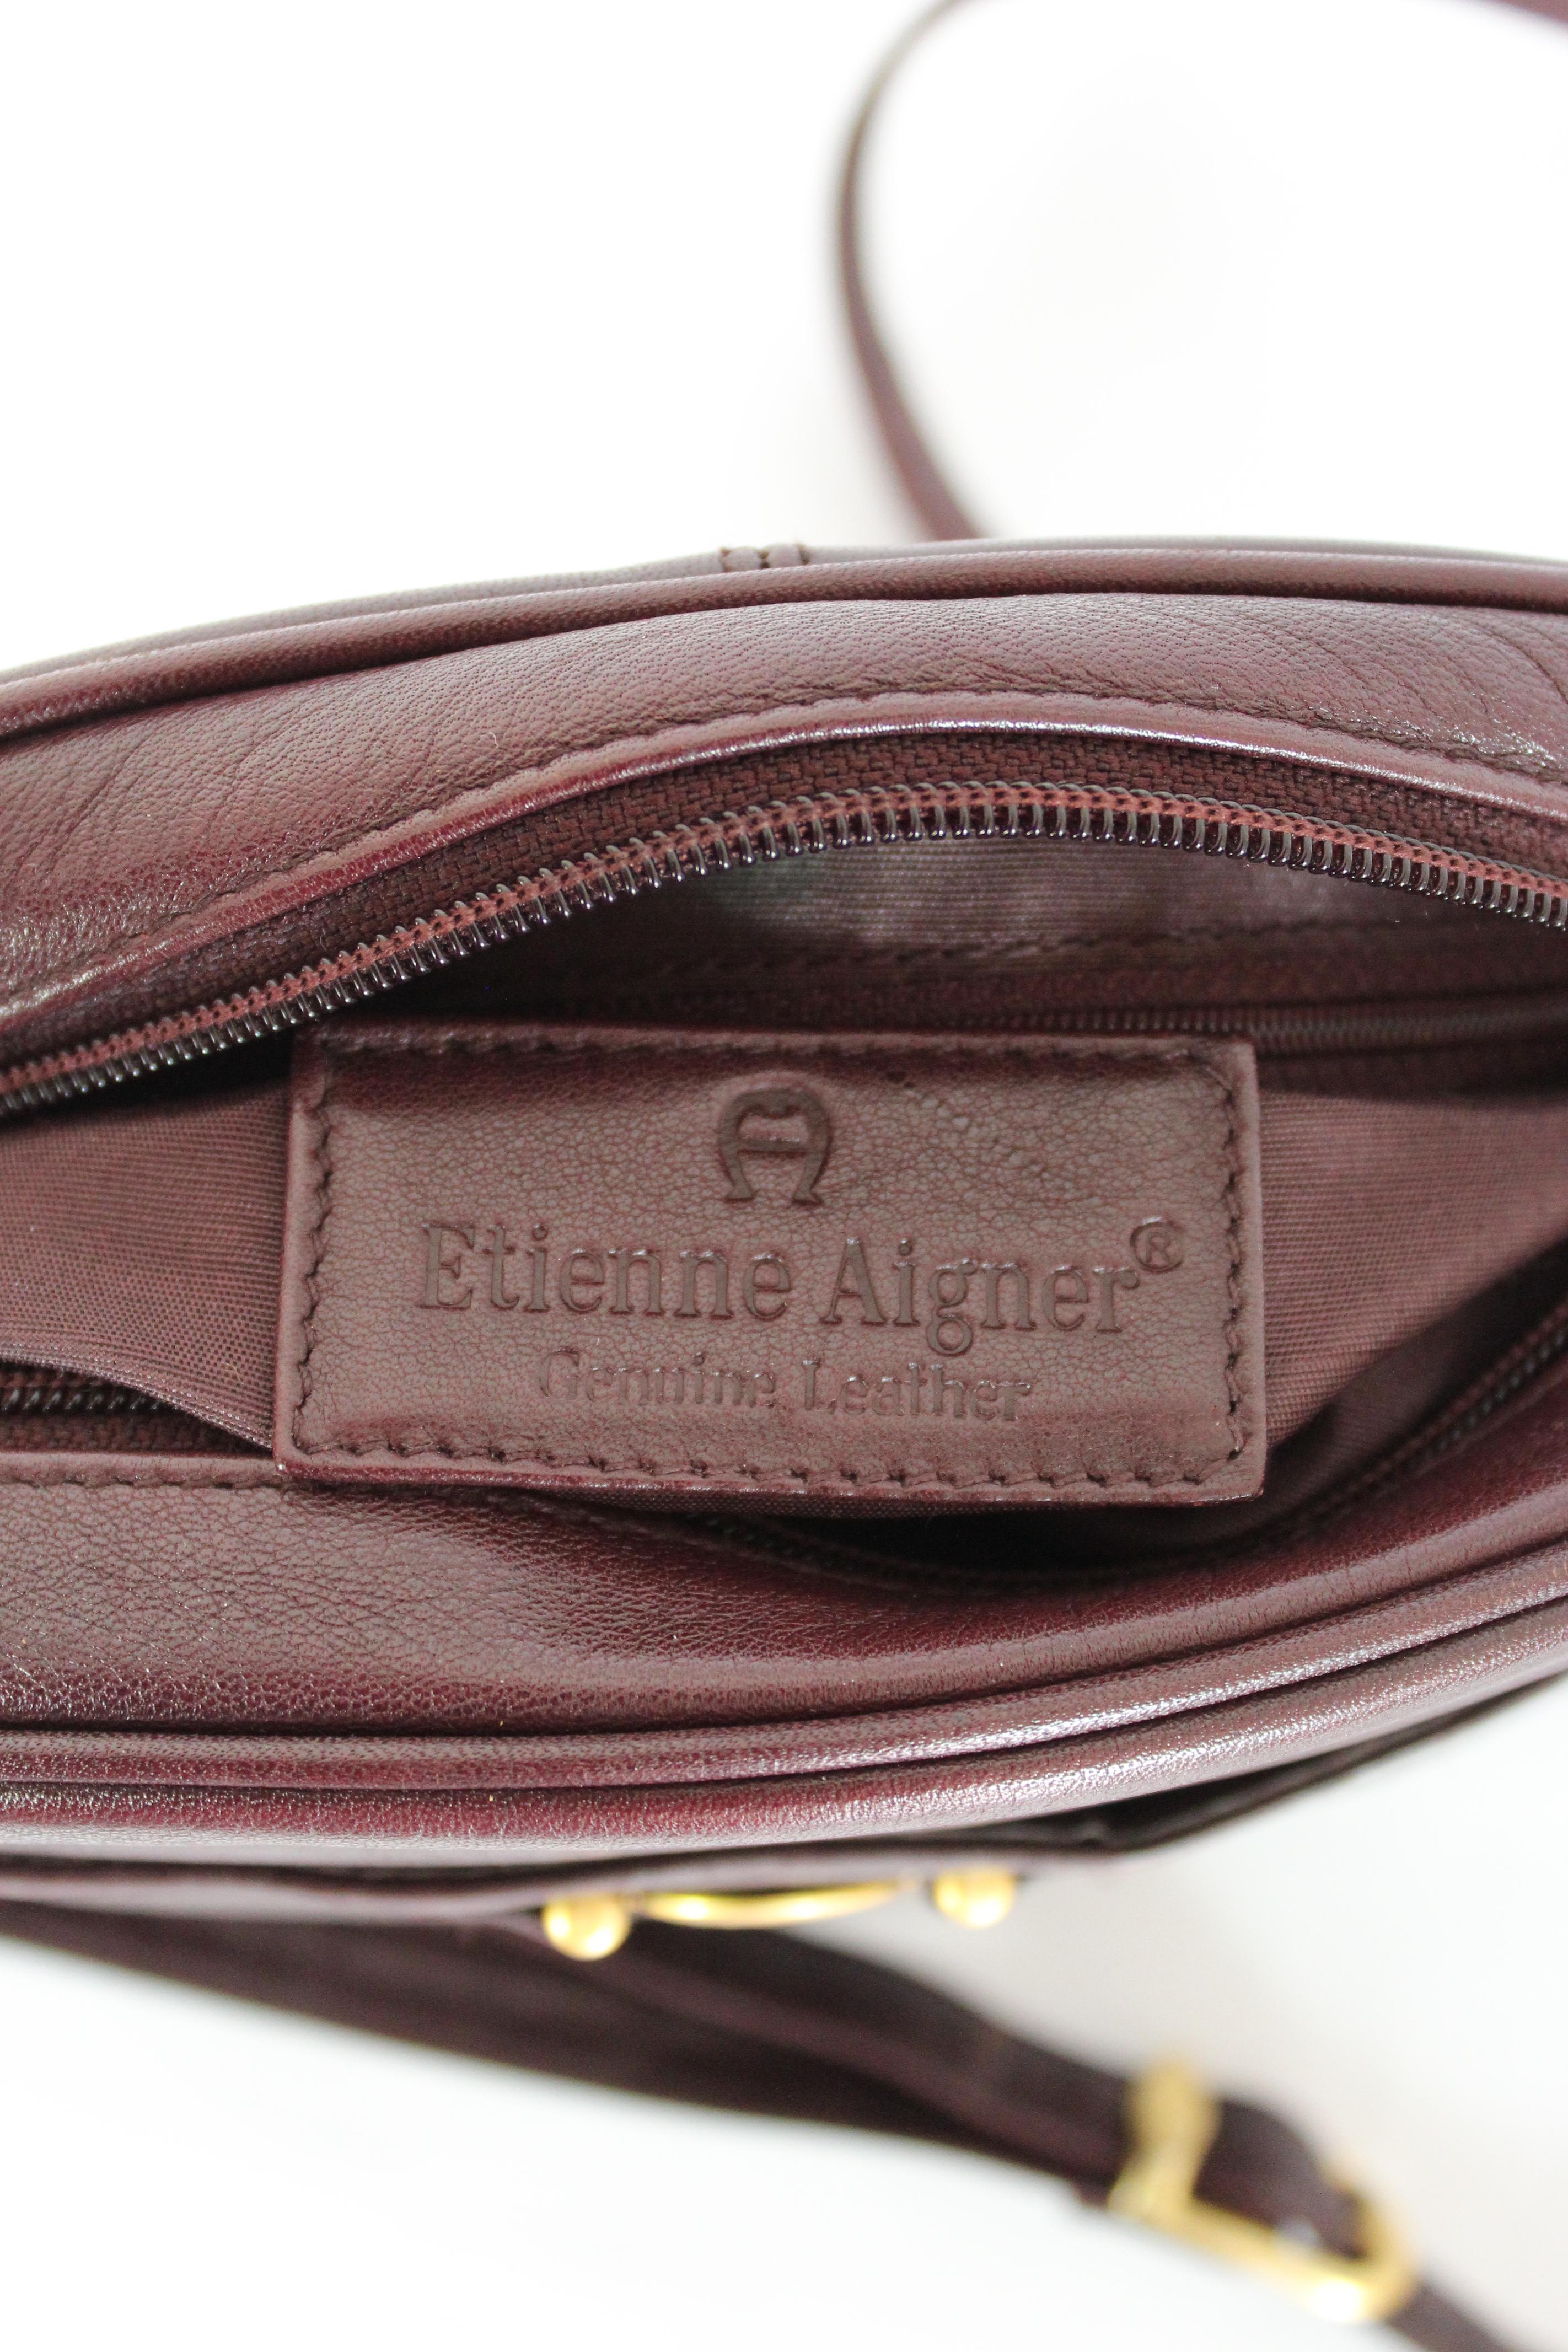 Etienne Aigner Burgundy Leather Shoulder Bag 1980s 2